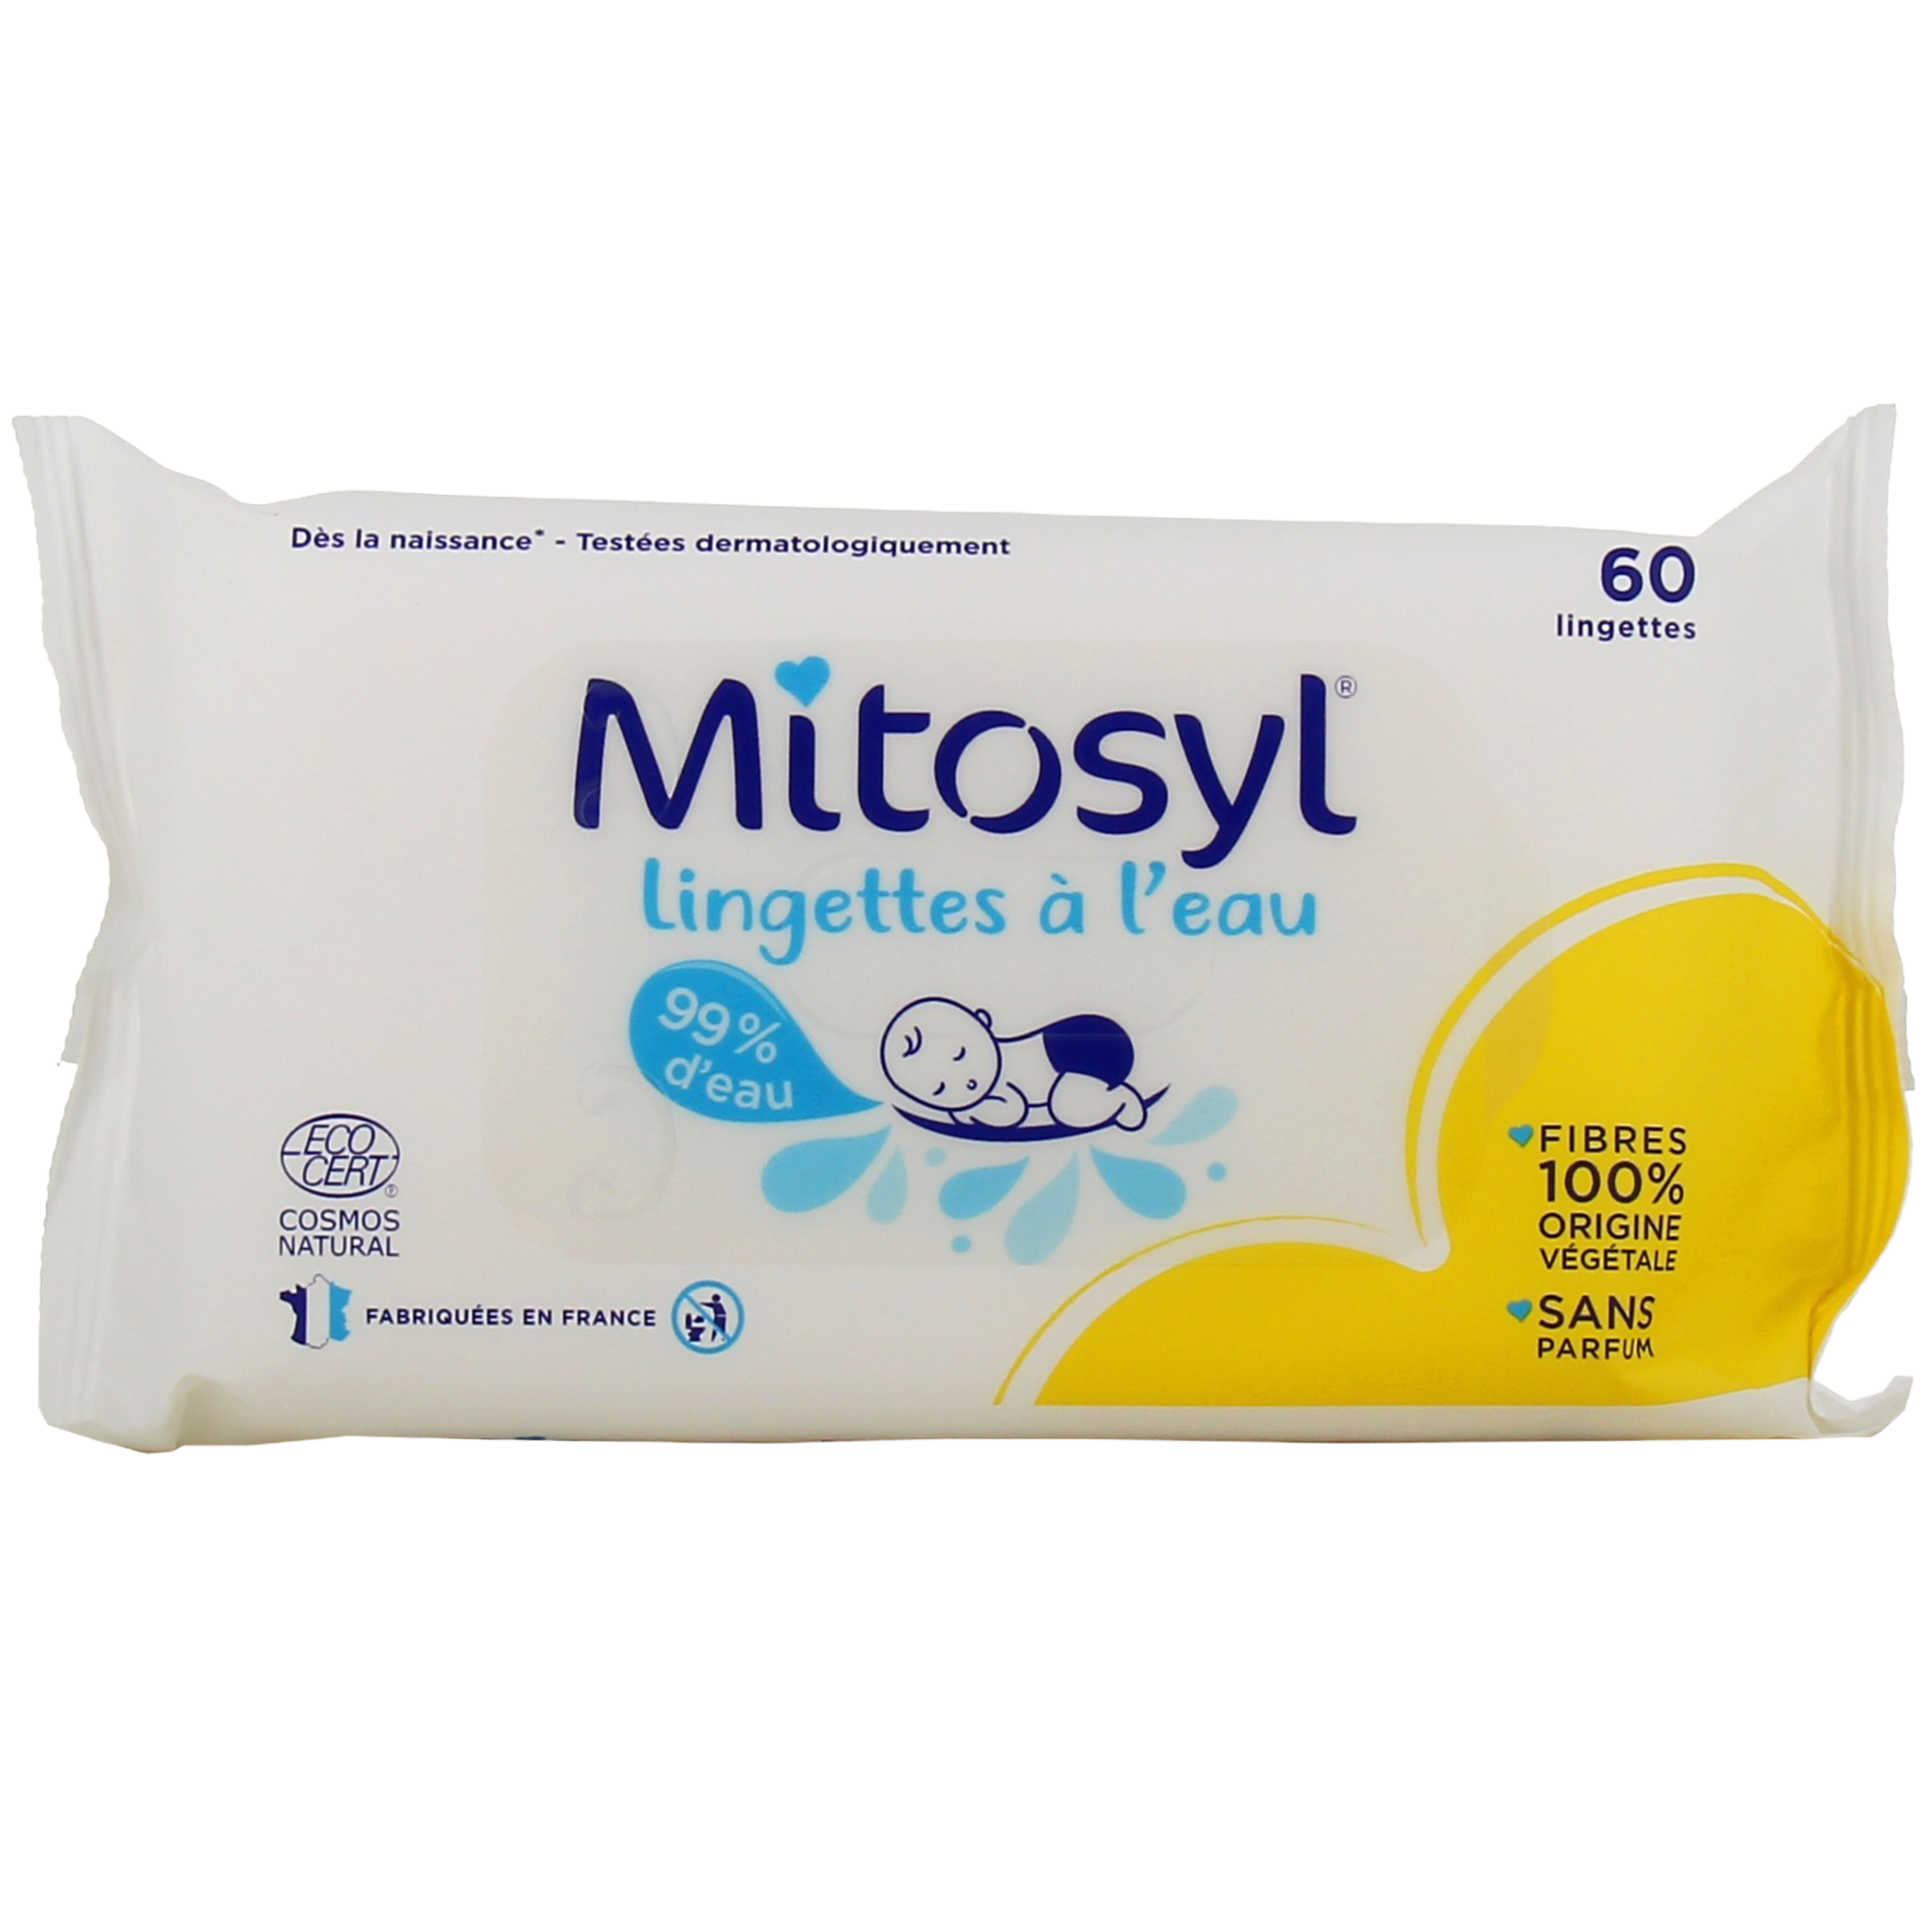 Mitosyl lingettes à l'eau 100% fibres végétales - Dès la naissance